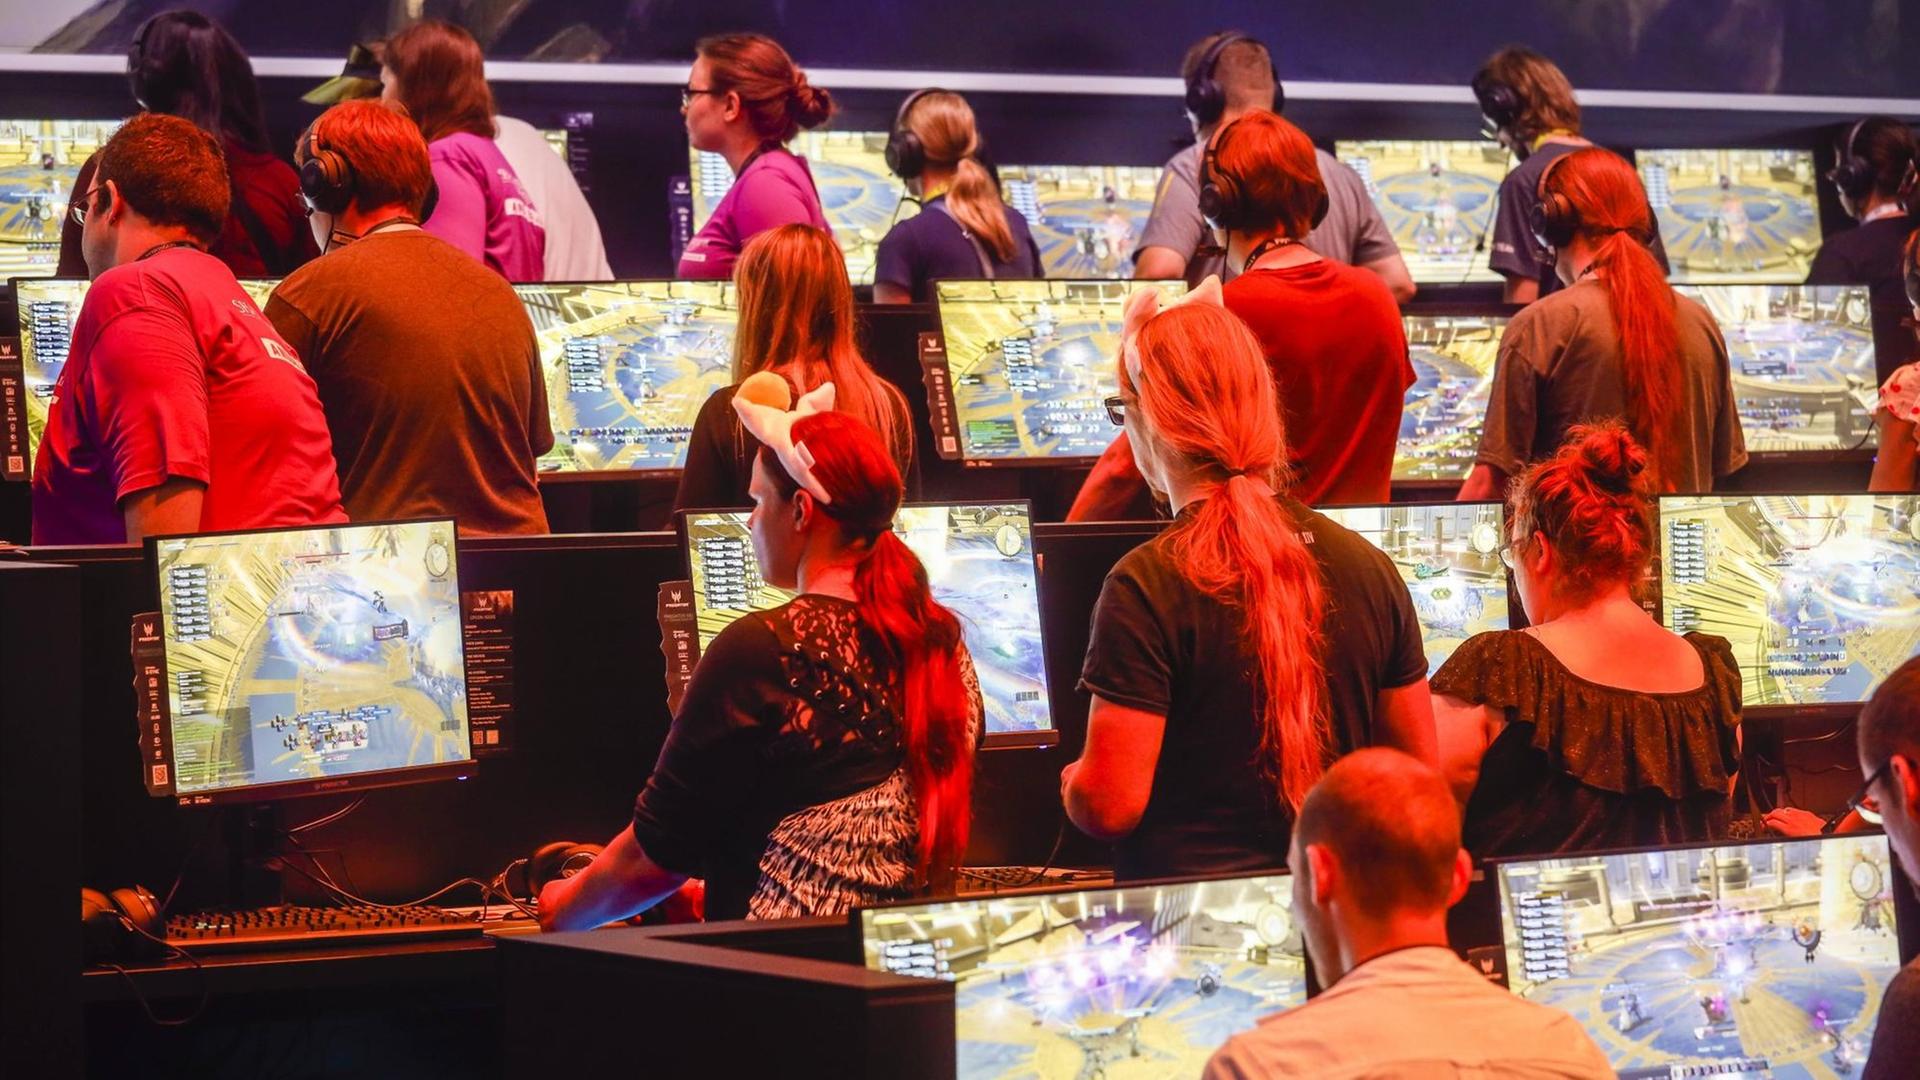 Messebesucher spielen auf der Messe Gamescom das Computerspiel Final Fantasy XIV